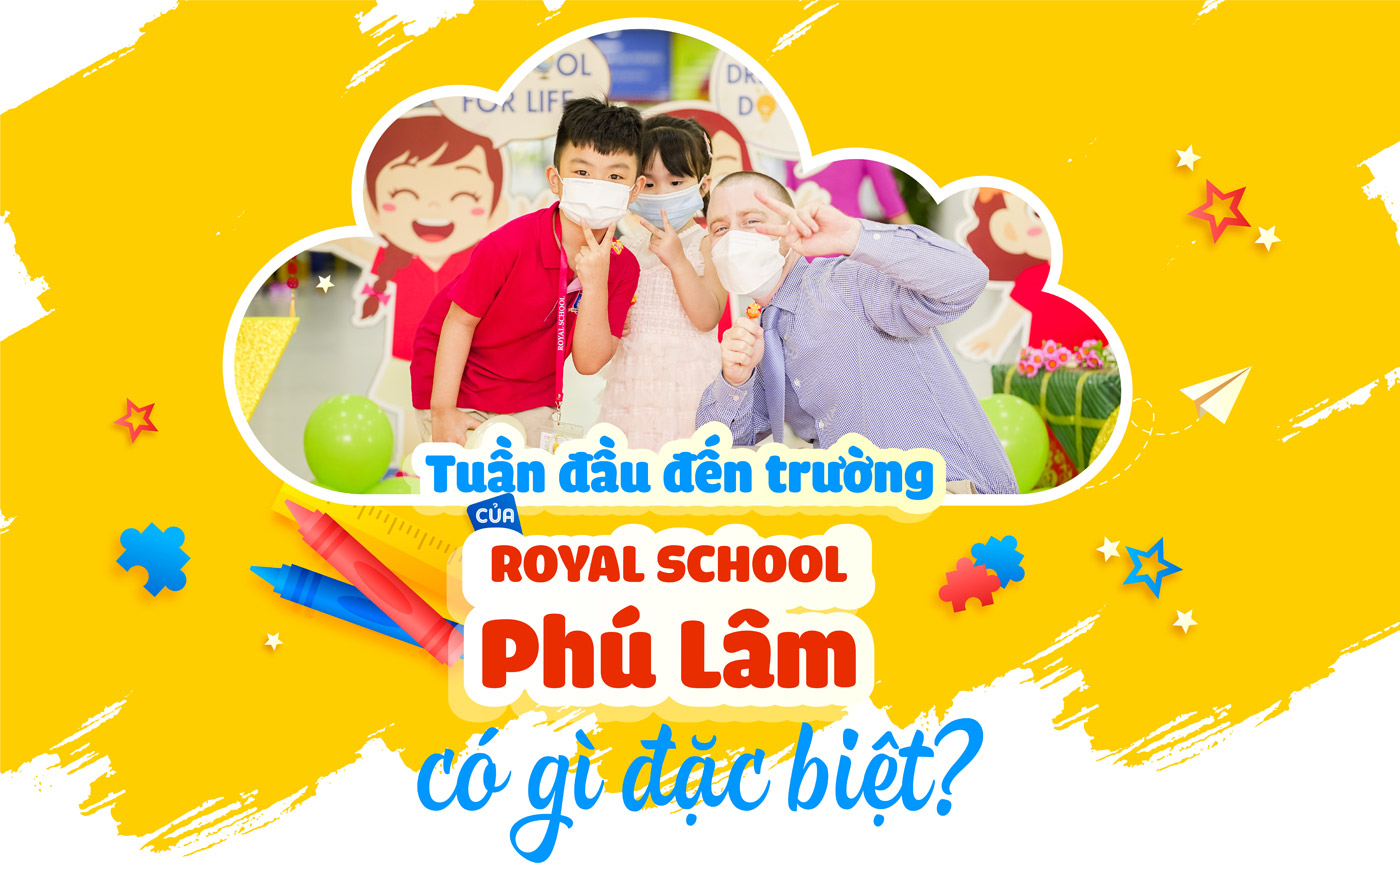 Tuần đầu đến trường của Royal School Phú Lâm có gì đặc biệt - Ảnh 1